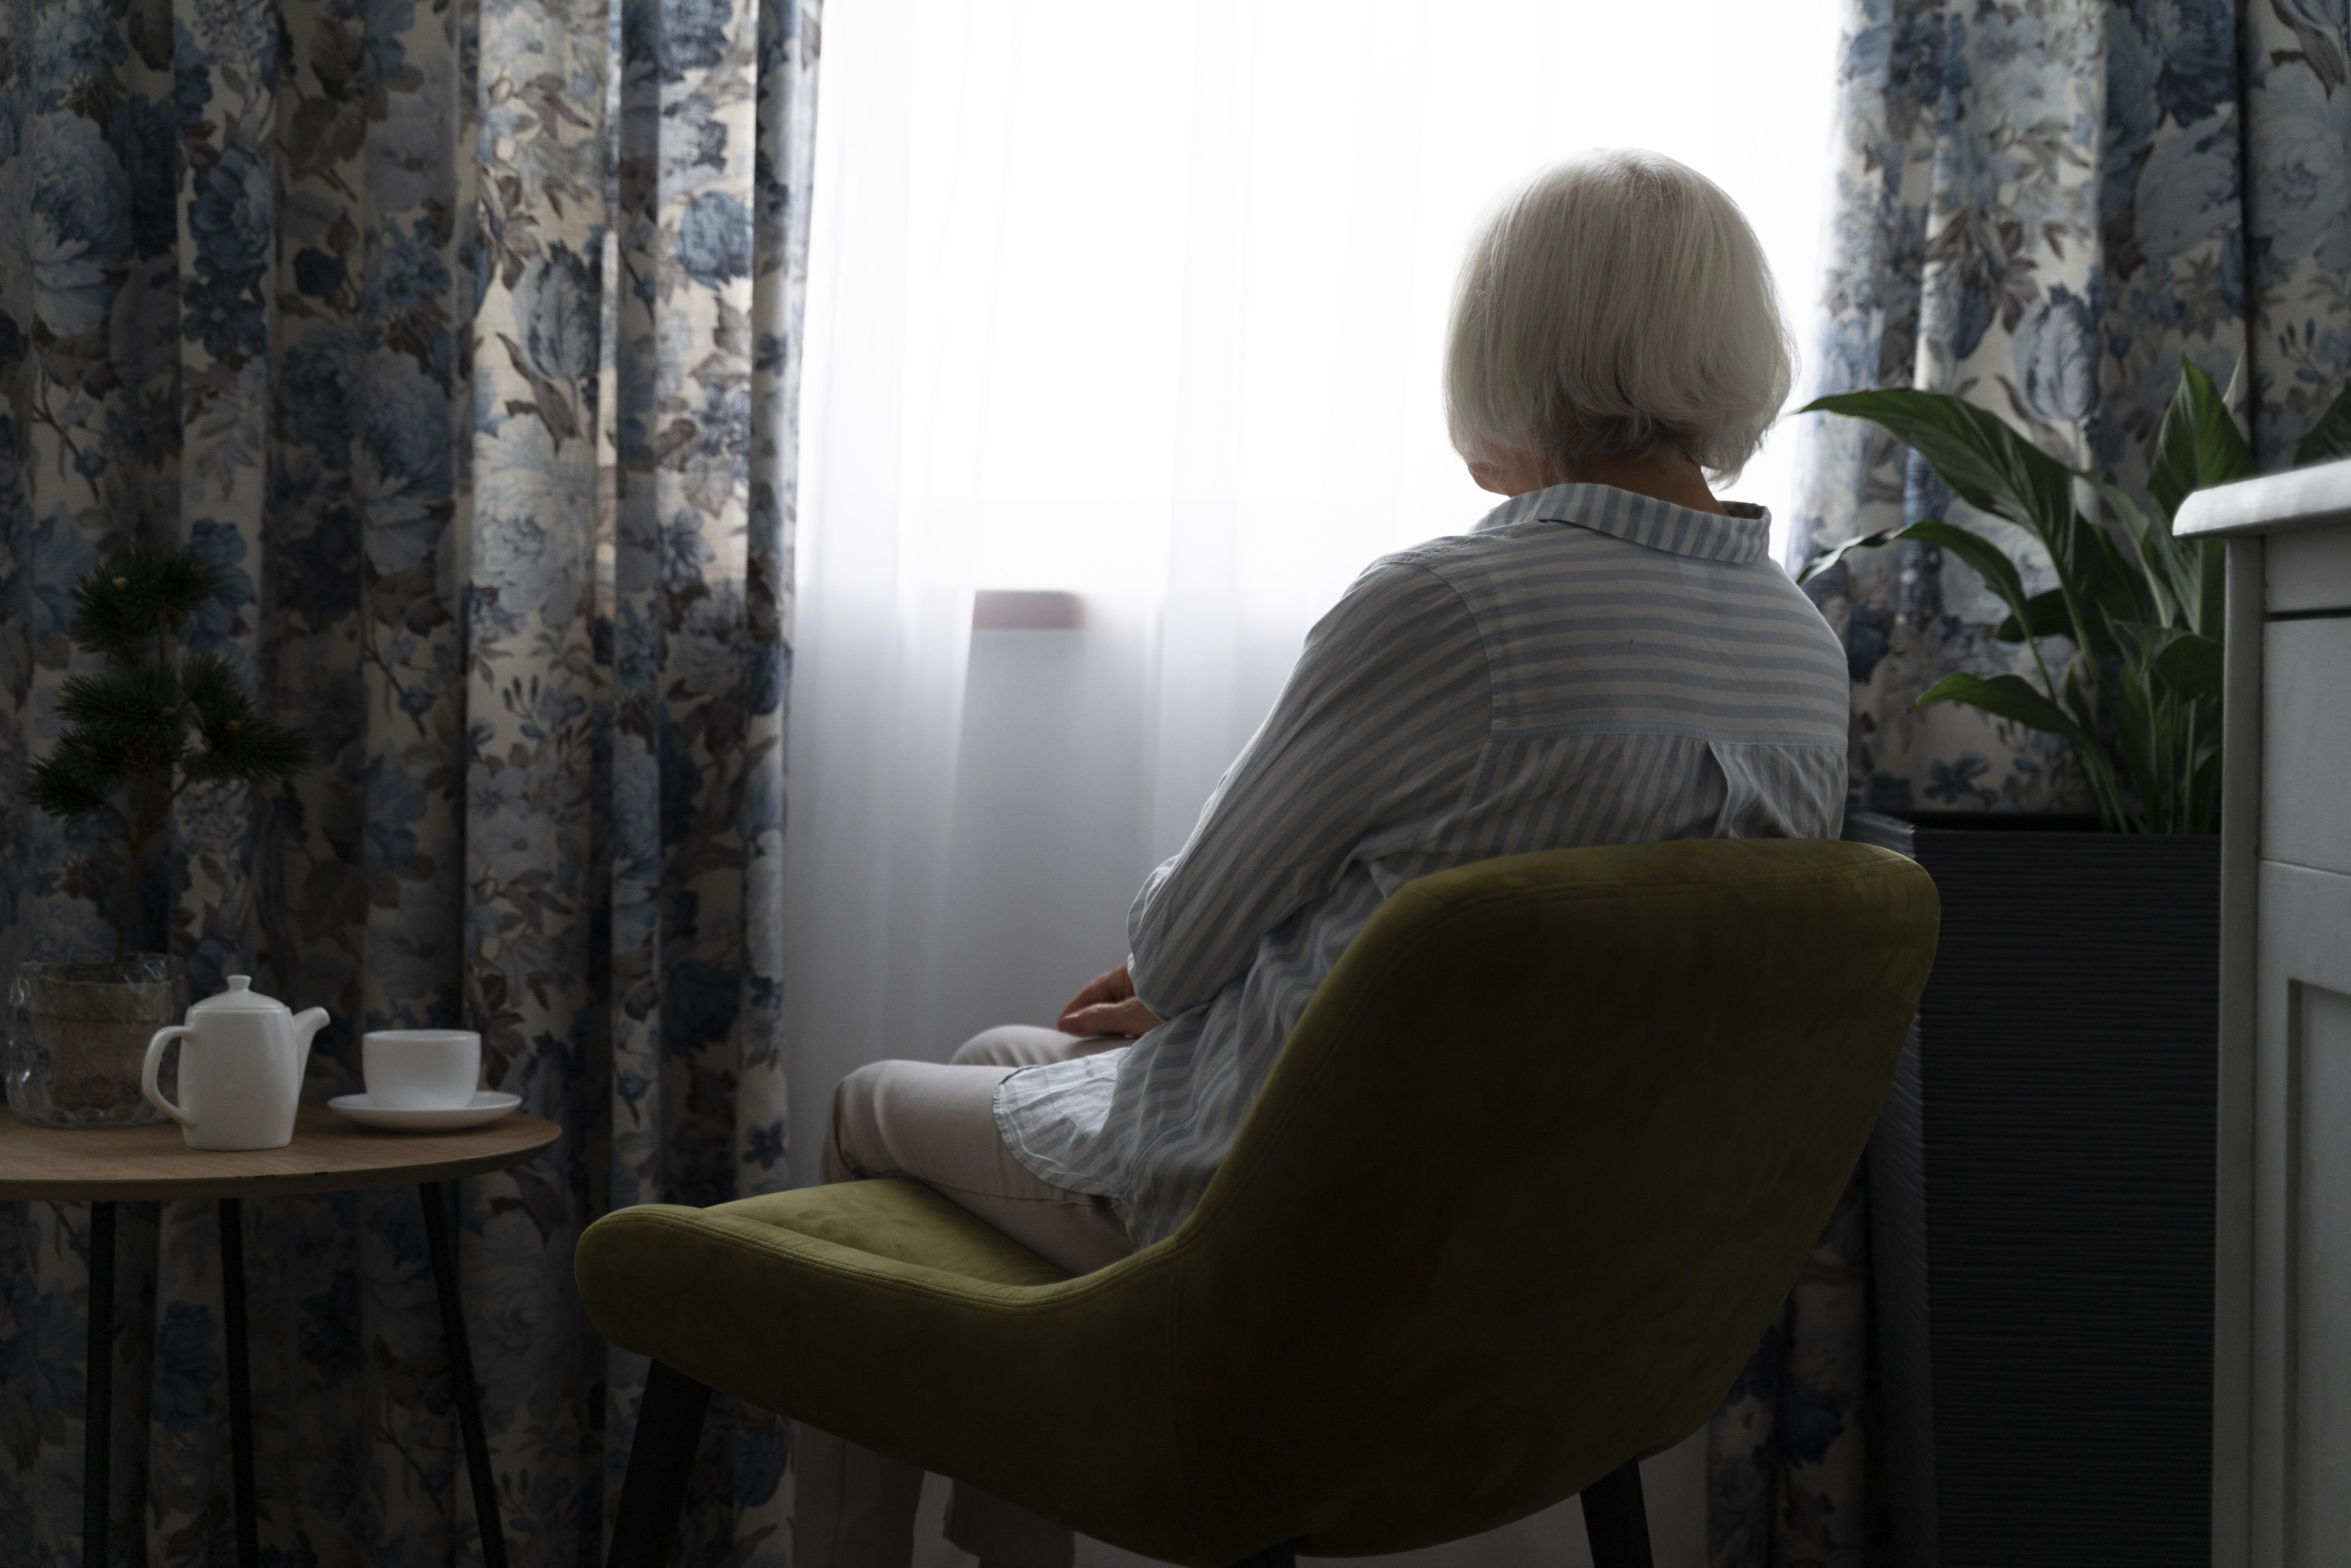 O idoso com Alzheimer deve interagir com as pessoas ao seu redor e não ficar isolado